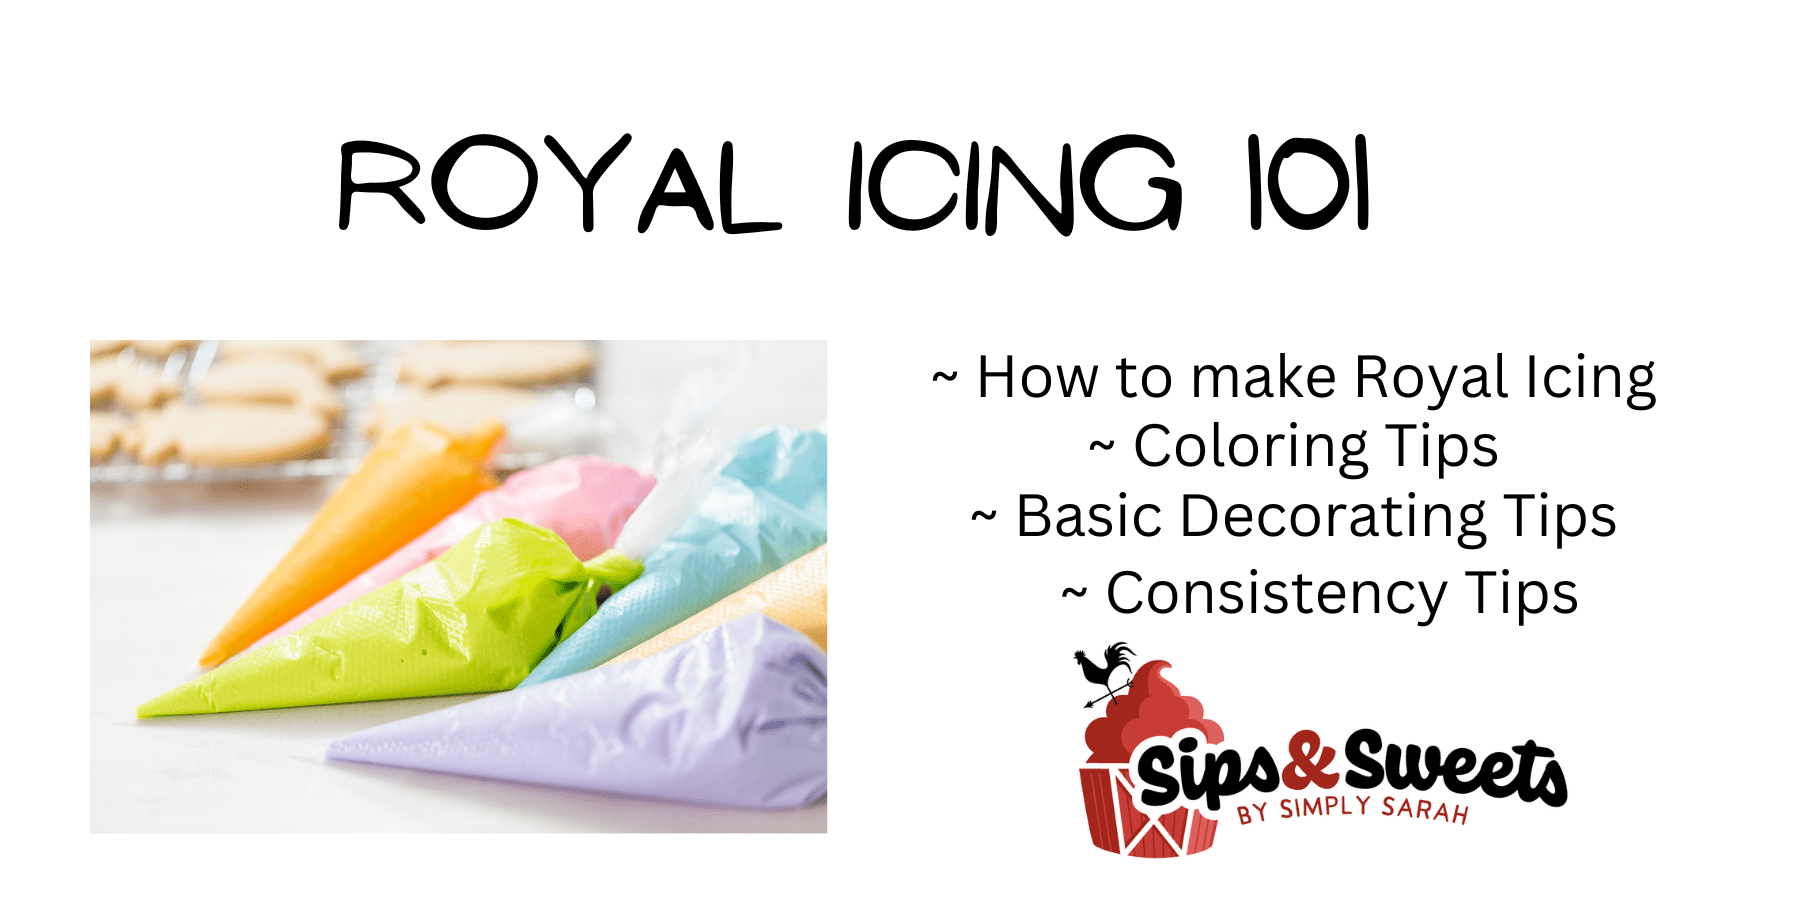 royal icing 101